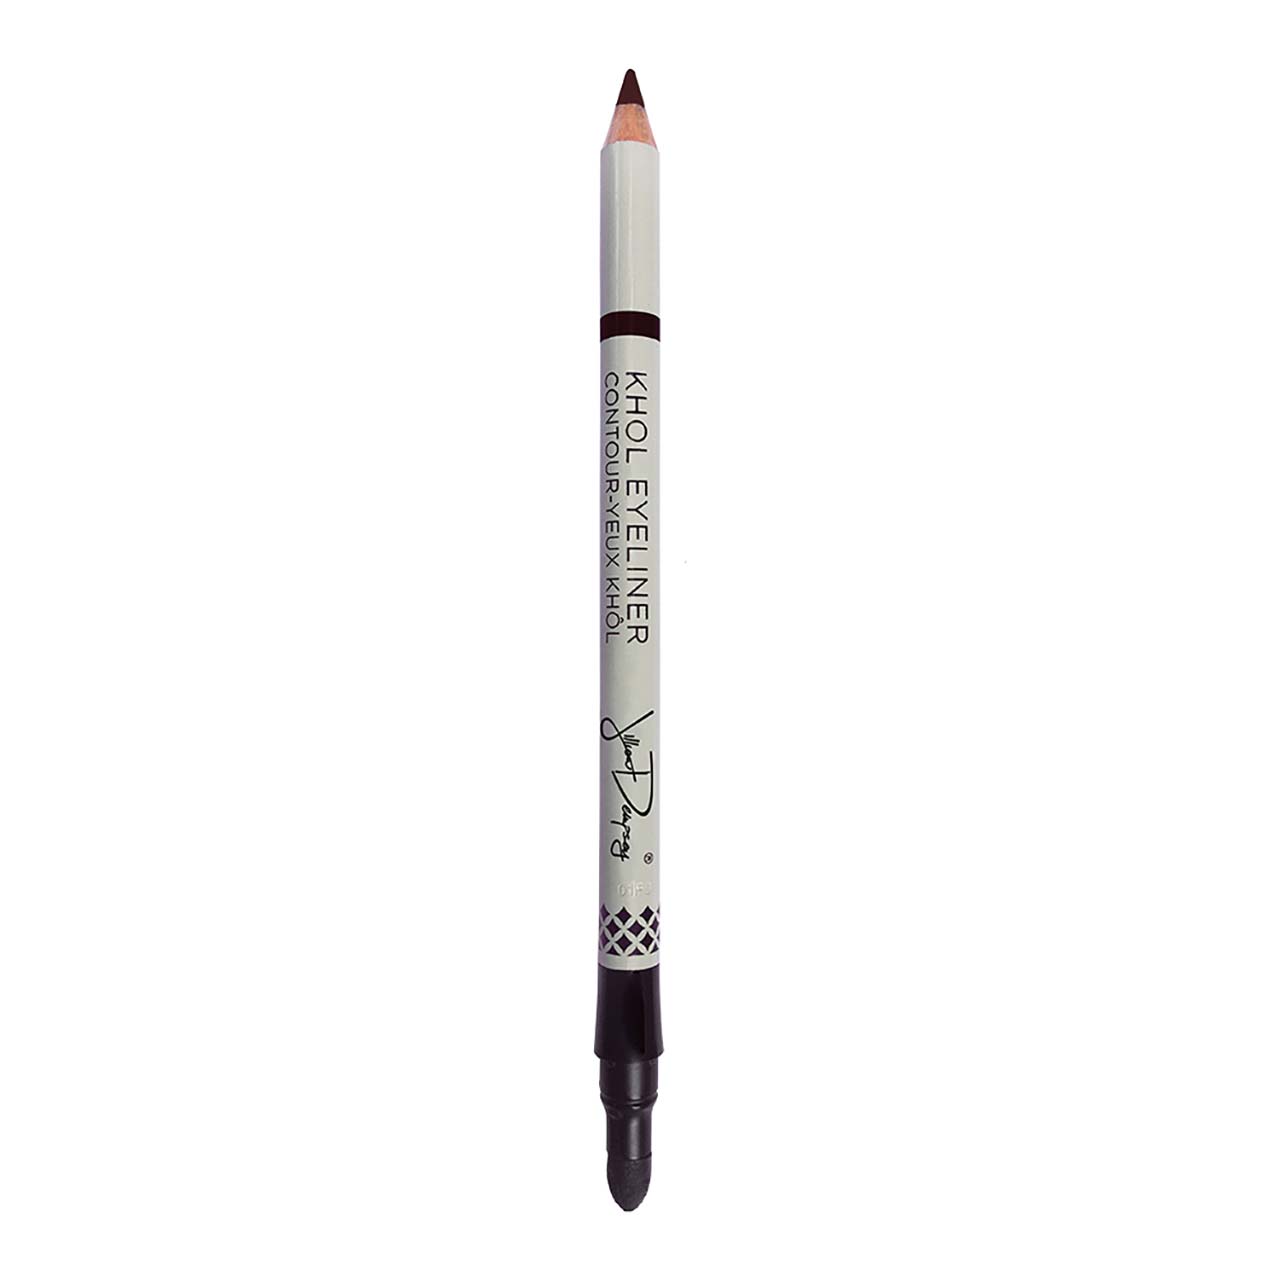 Khol noir crayon à l'huile amandes douce - khol eye liner - 4.90€